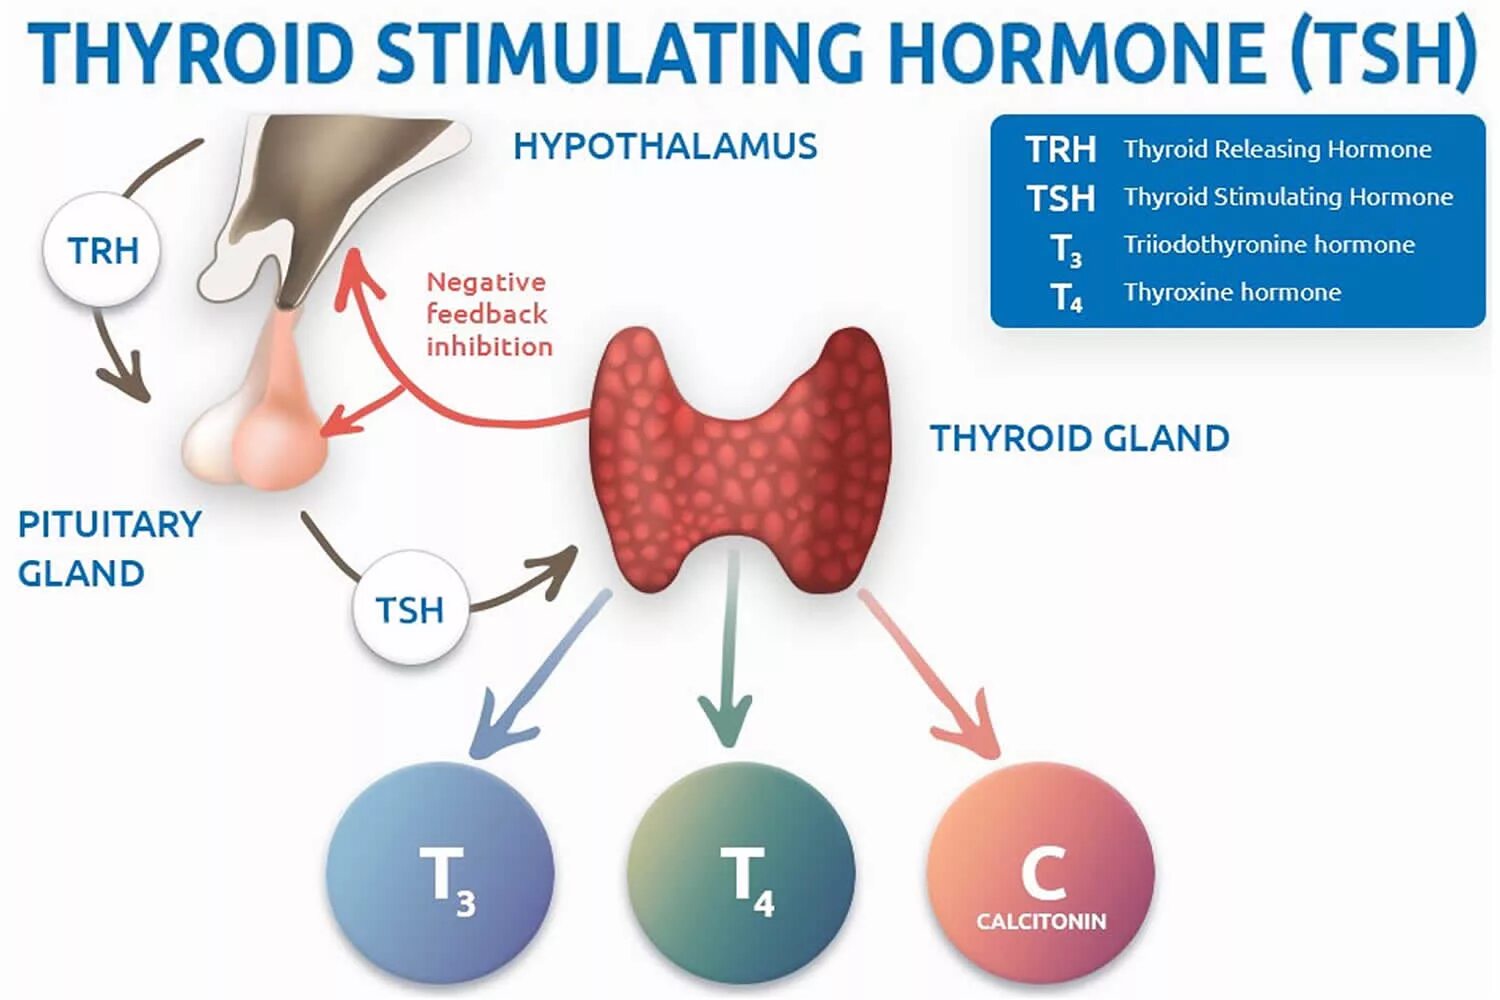 ТТГ гормон 4.60. Гормоны щитовидной железы ТТГ И т4. ТТГ влияет на функцию щитовидной железы по принципу. Тиреотропный гормон вырабатывается гормонов. Секретирует тиреотропный гормон